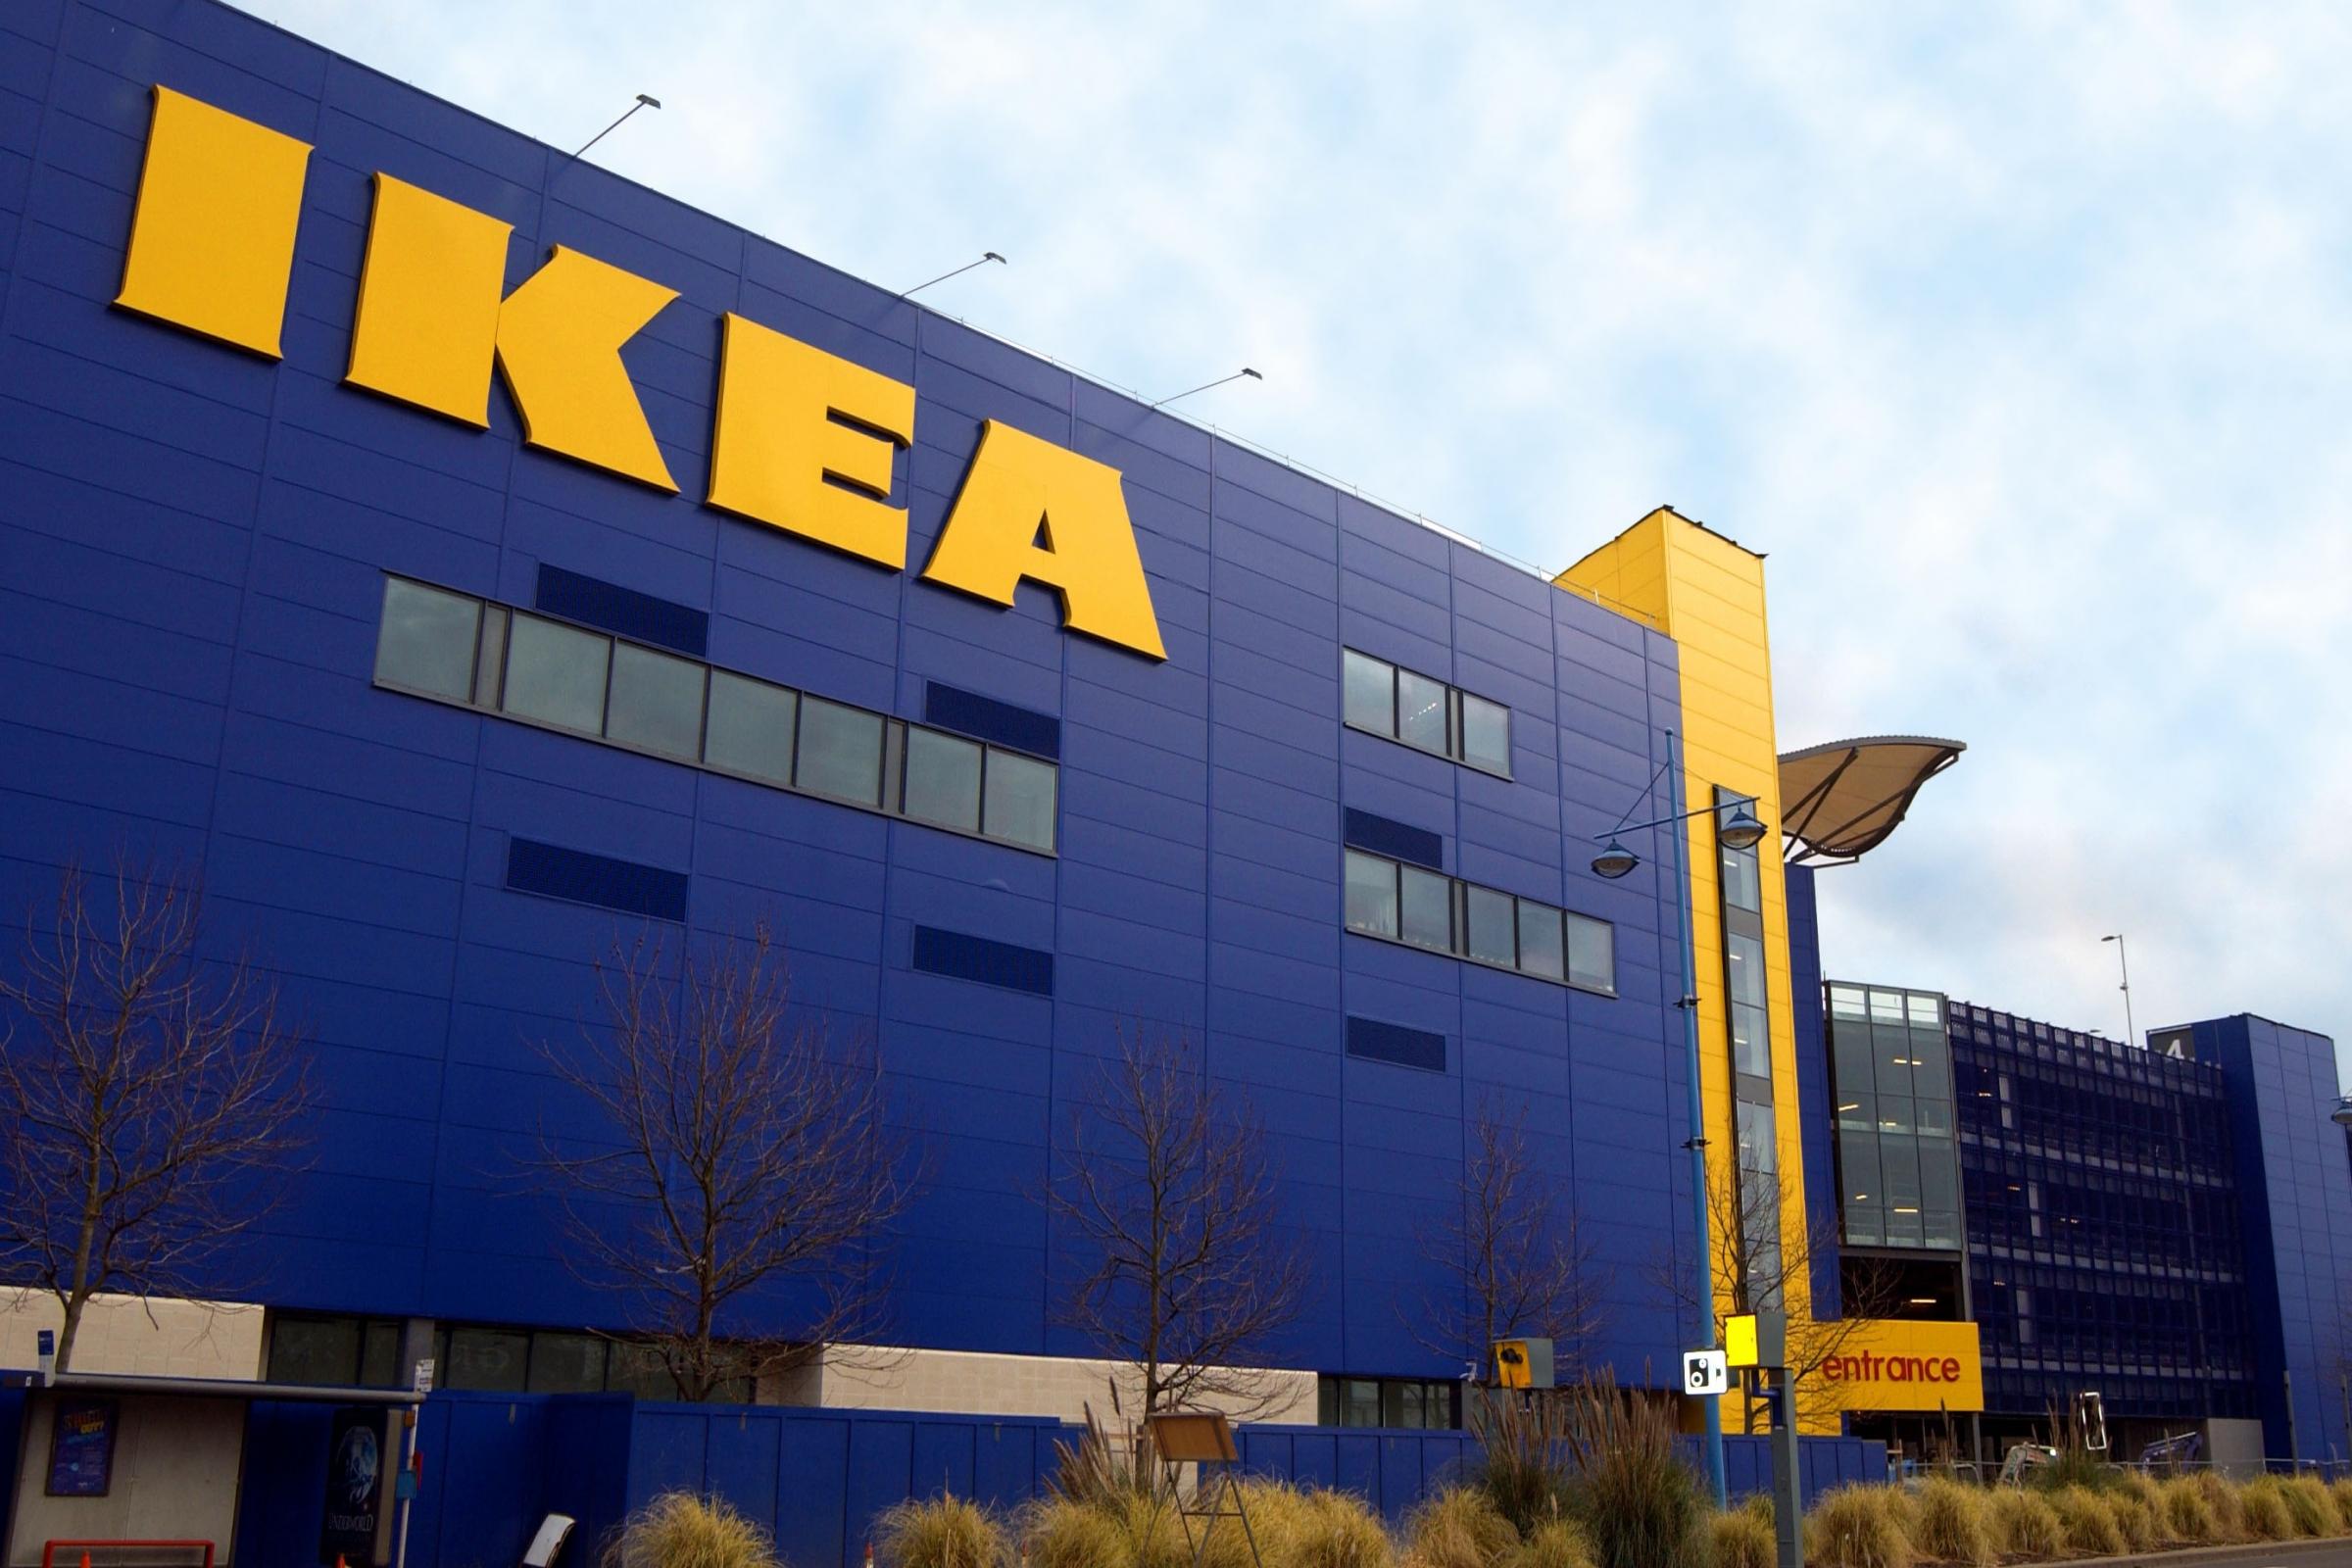 Southampton man stole from IKEA store